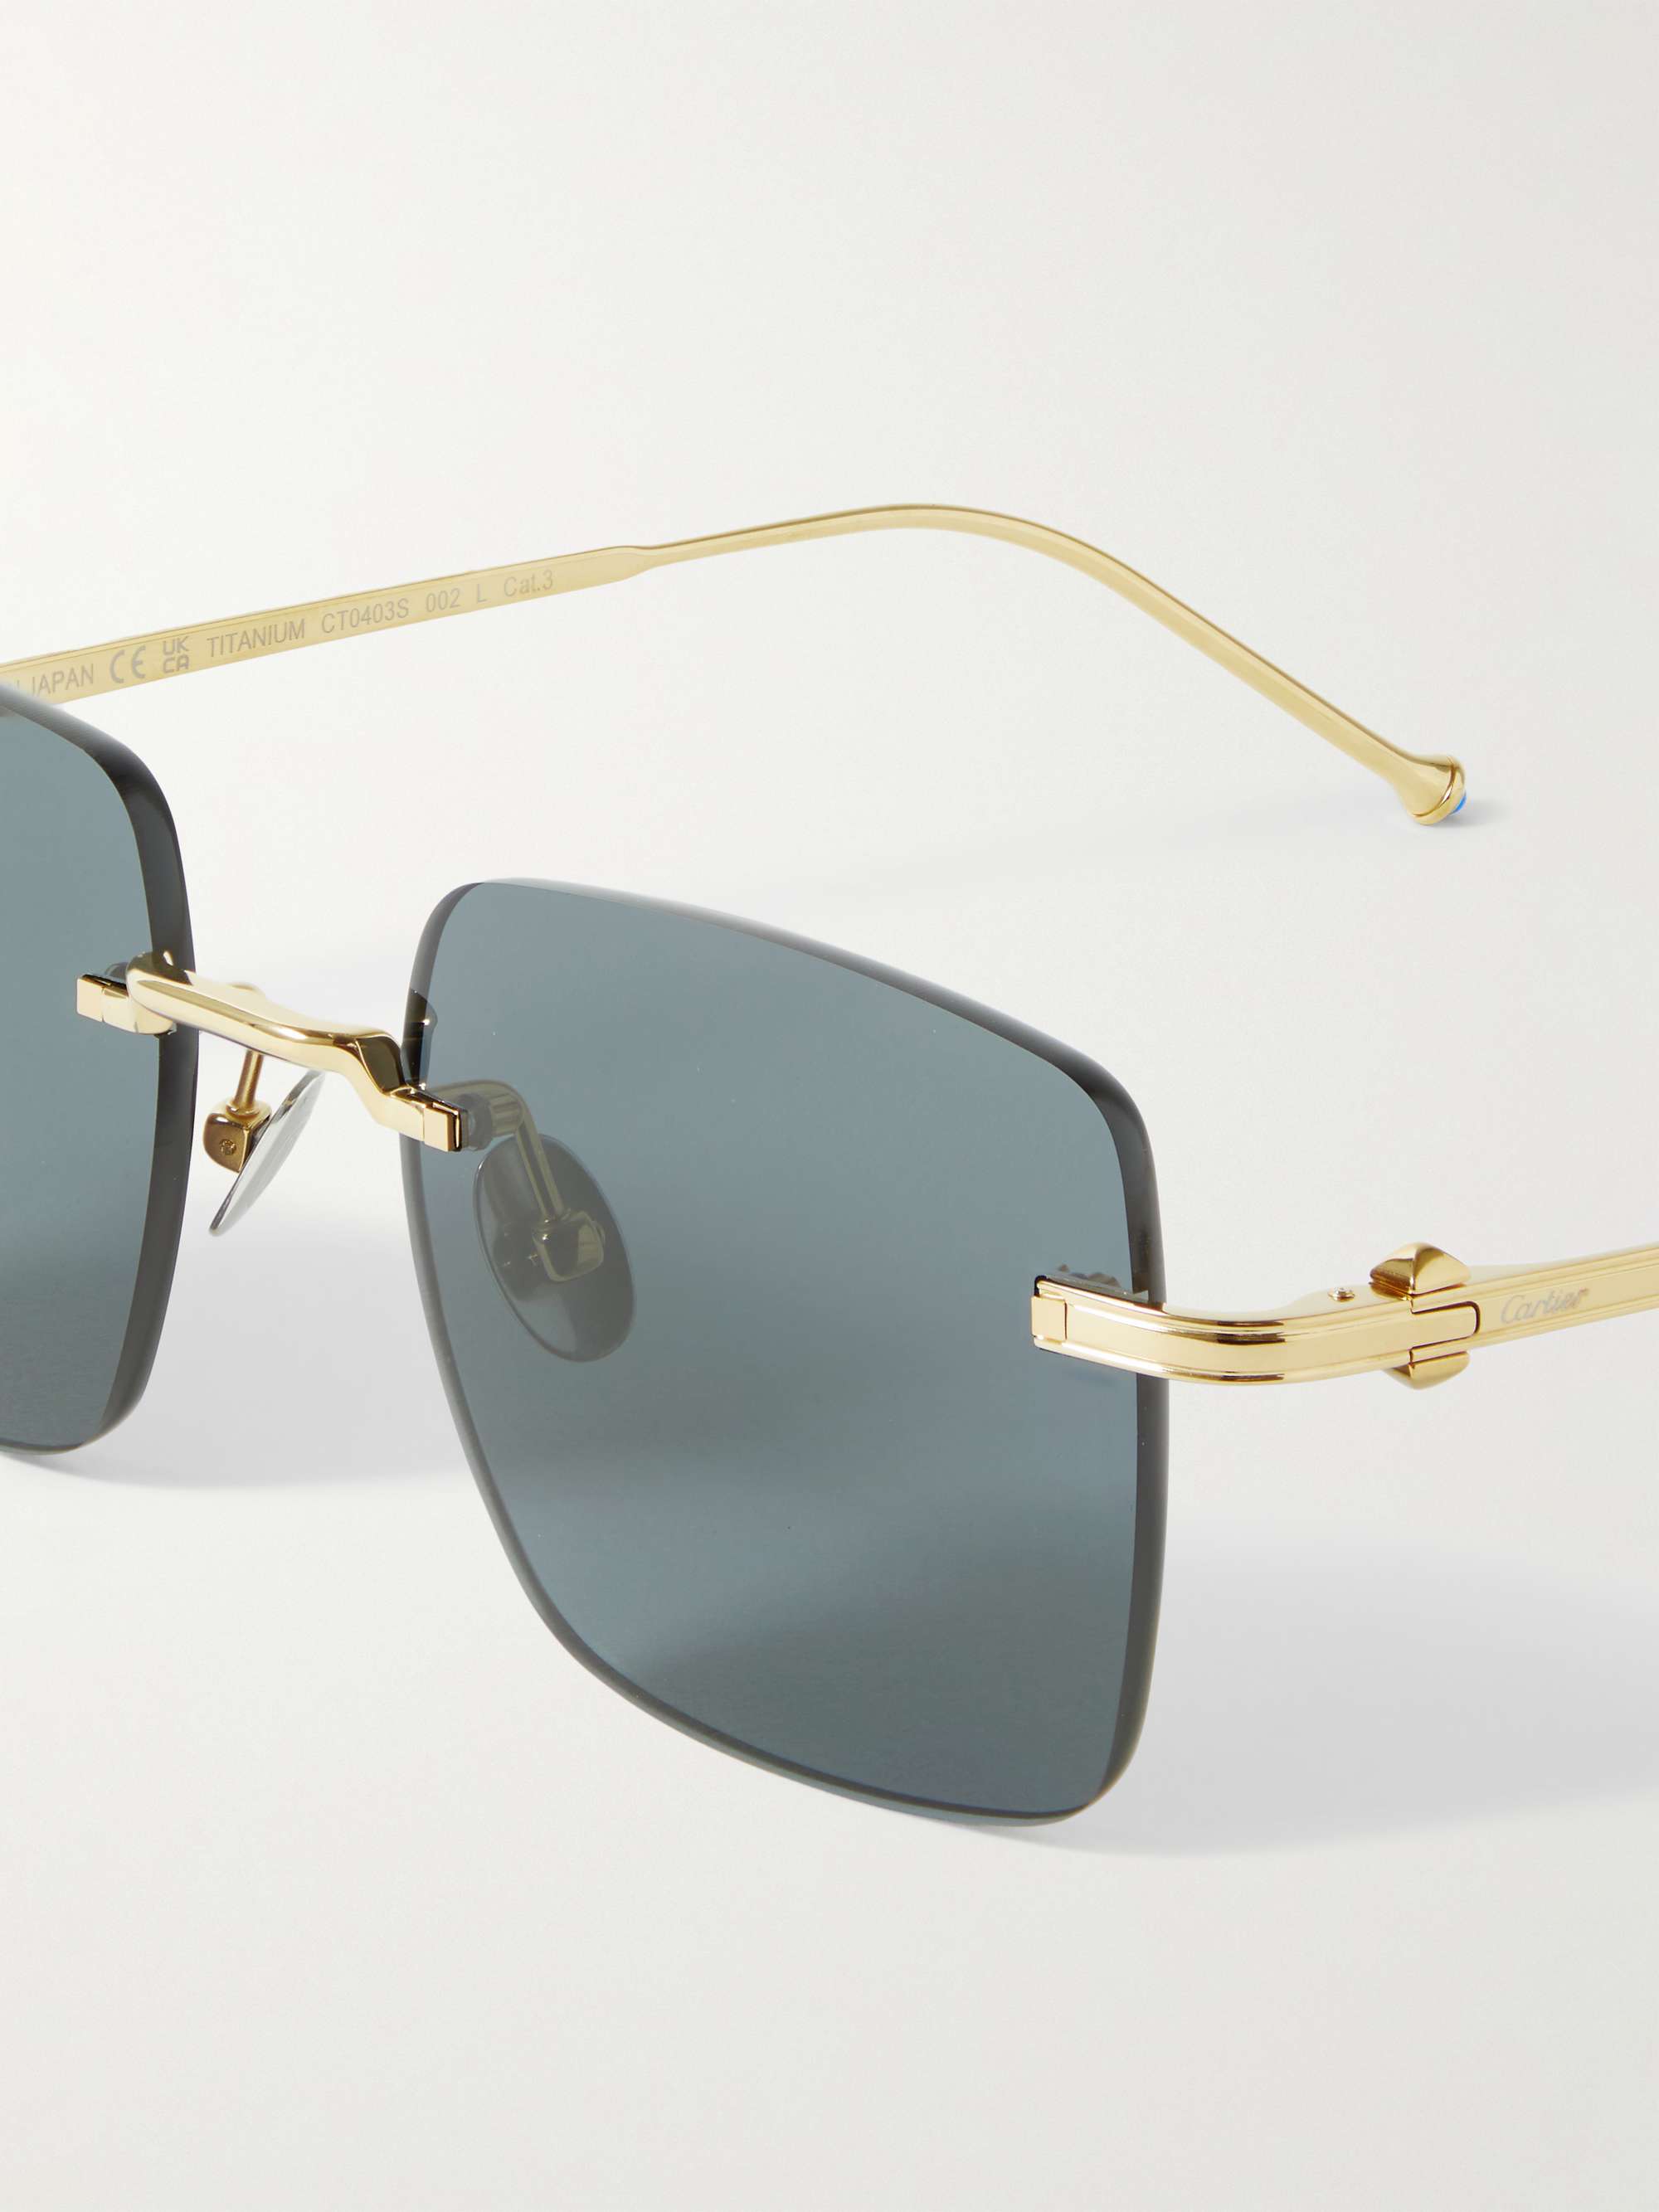 CARTIER EYEWEAR Frameless Gold-Tone Sunglasses